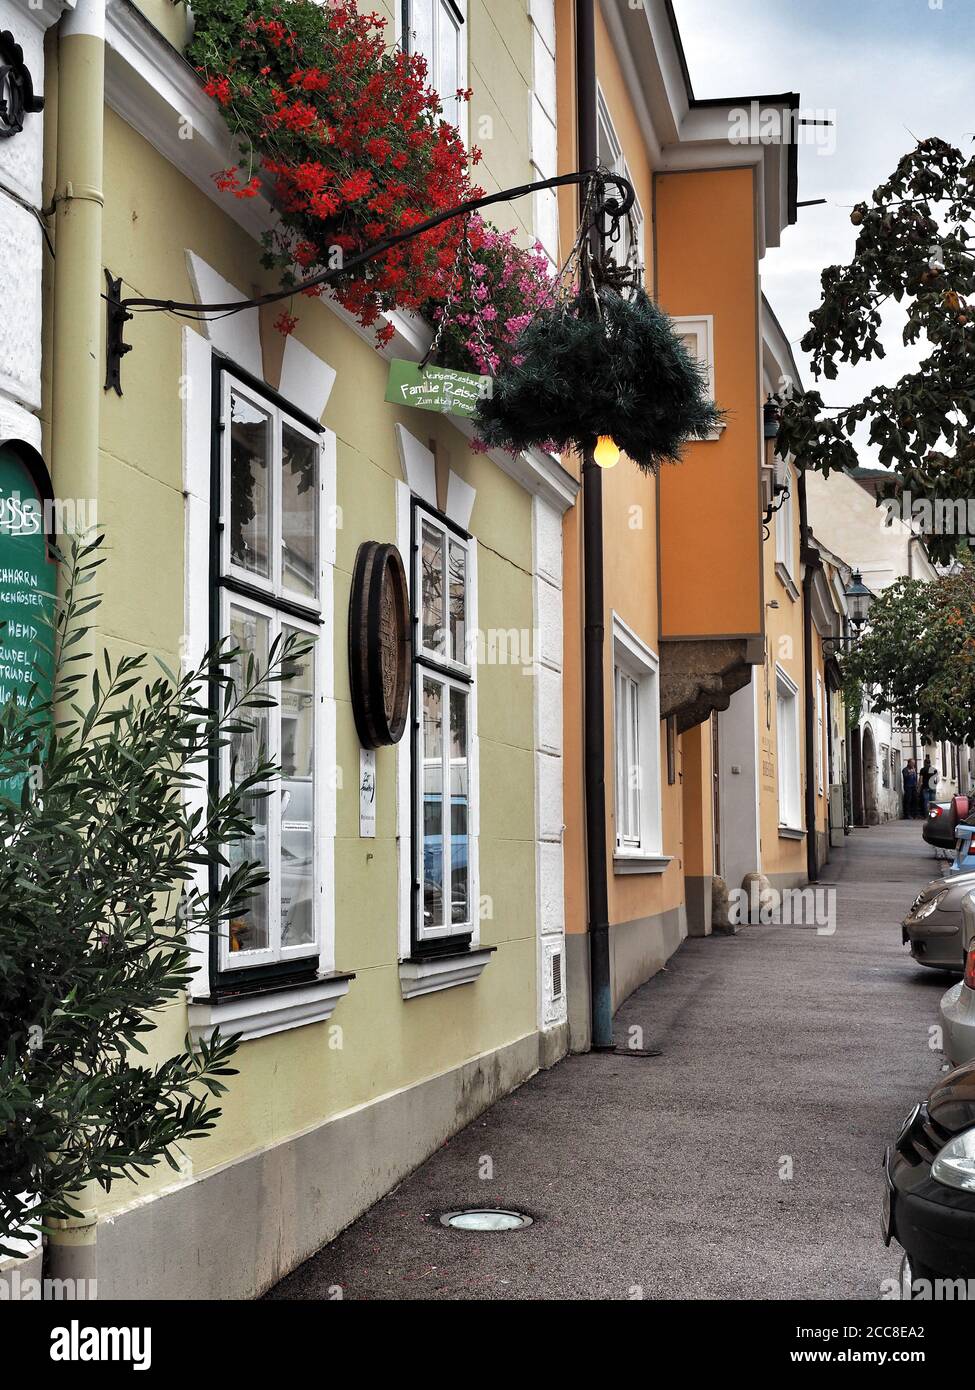 GUMPOLDSKIRCHEN, ÖSTERREICH - 09/01/2018. Blick auf den leeren Gang und die Fassade der Häuser mit Blumen in den Fenstern. Stockfoto